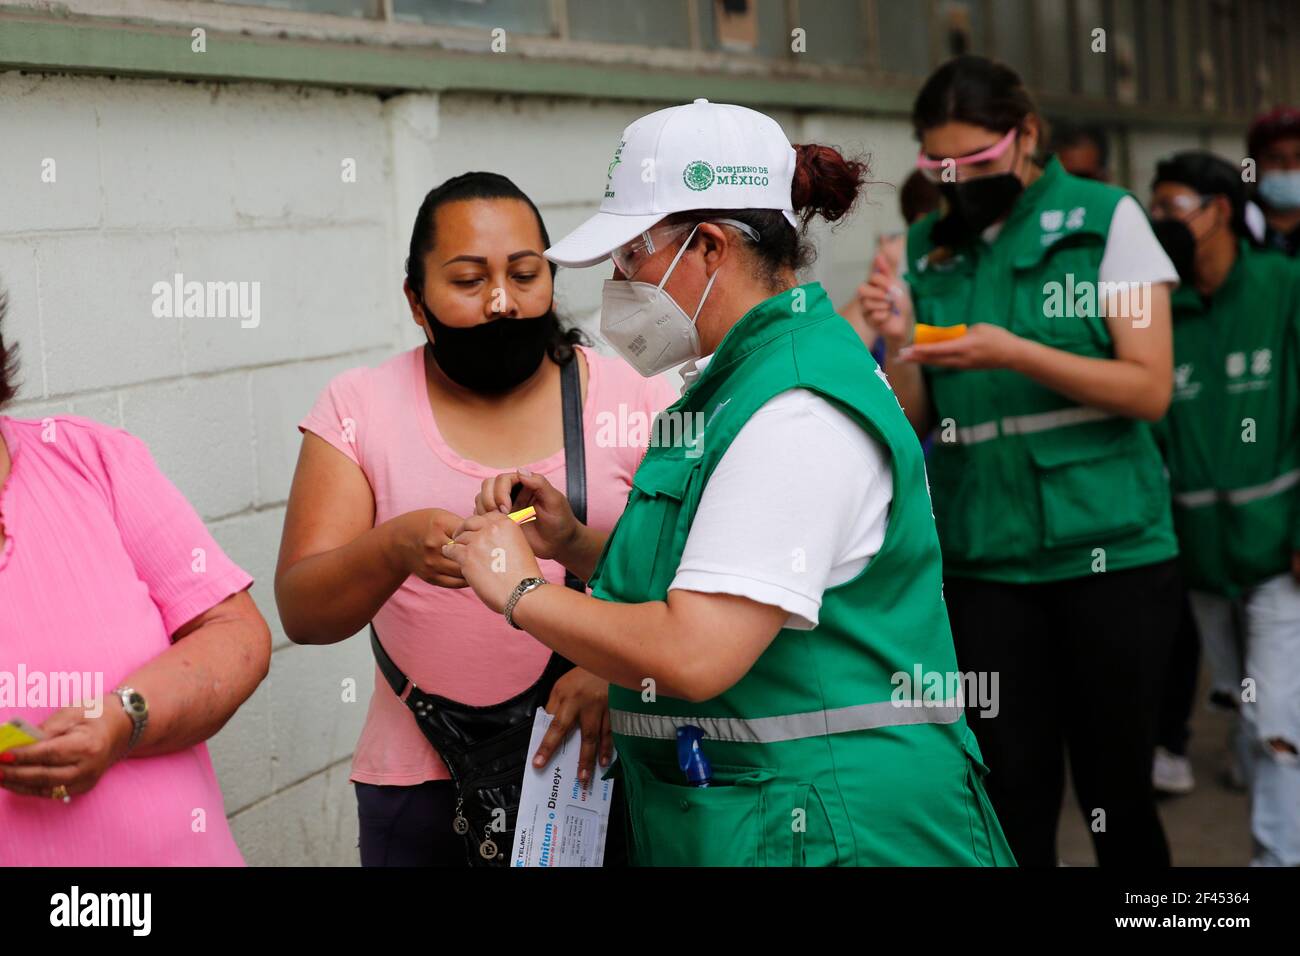 Ciudad de México, México. 18th de marzo de 2021. CIUDAD DE MÉXICO, MÉXICO - MARZO 18: Un anciano, durante el registro para poder recibir una dosis de la vacuna Covid-19, durante un programa de vacunación para personas mayores de 60 años, para inmunizar contra el SARS COV-2 que causa la enfermedad de Covid-19. El 18 de marzo de 2021 en la Ciudad de México, México (Foto de Eyepix/Sipa USA) crédito: SIPA US/Alamy Live News Foto de stock